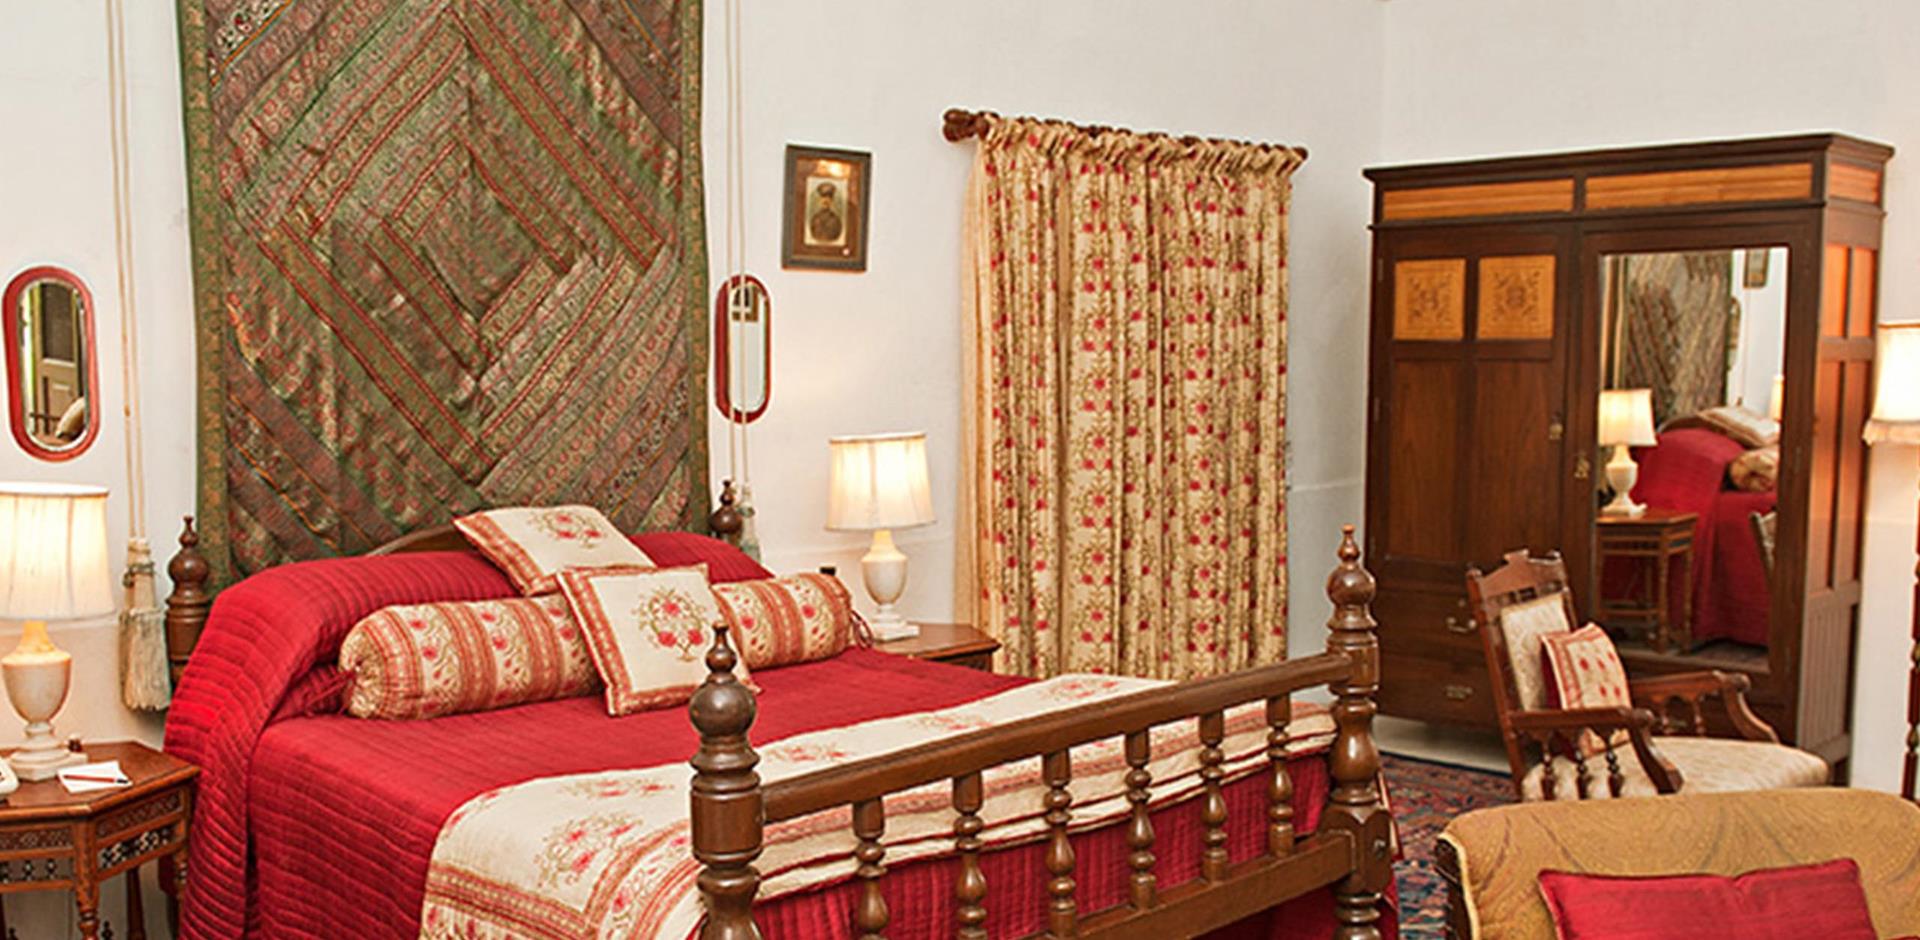 Bedroom, Bal Samand Lake Palace, India